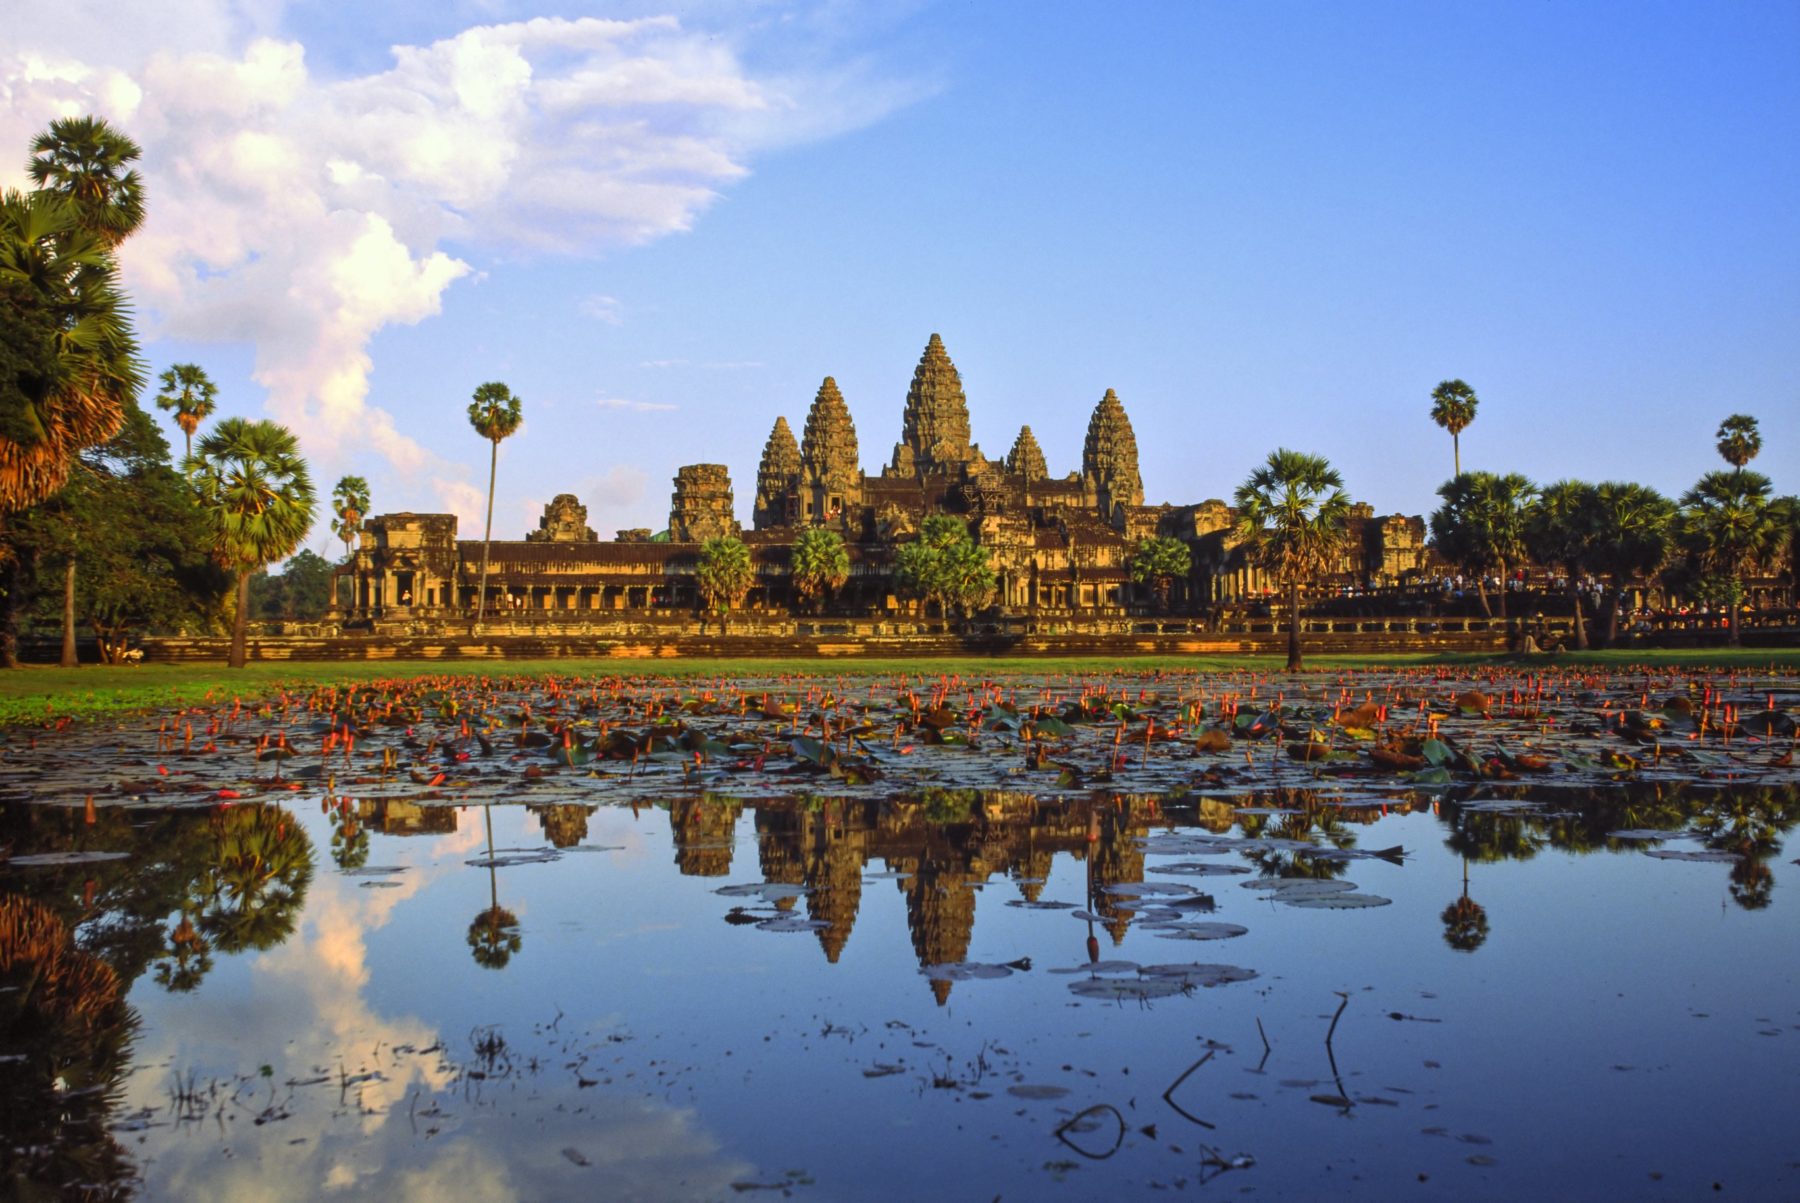 Angkor Wat at sunset, Cambodia